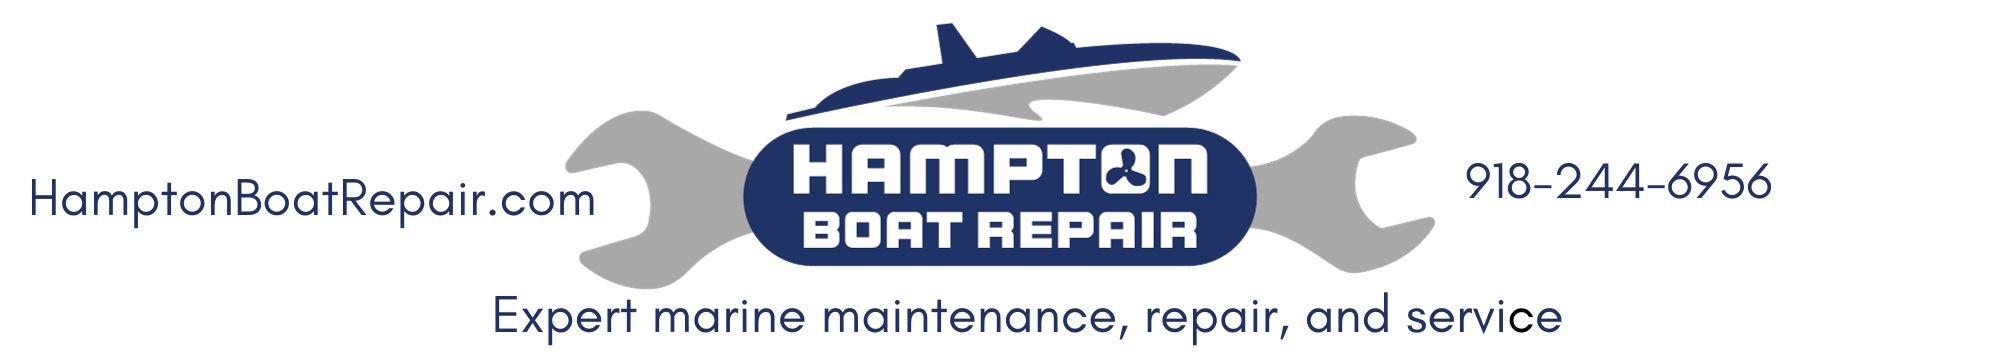 Hampton Boat Repair 